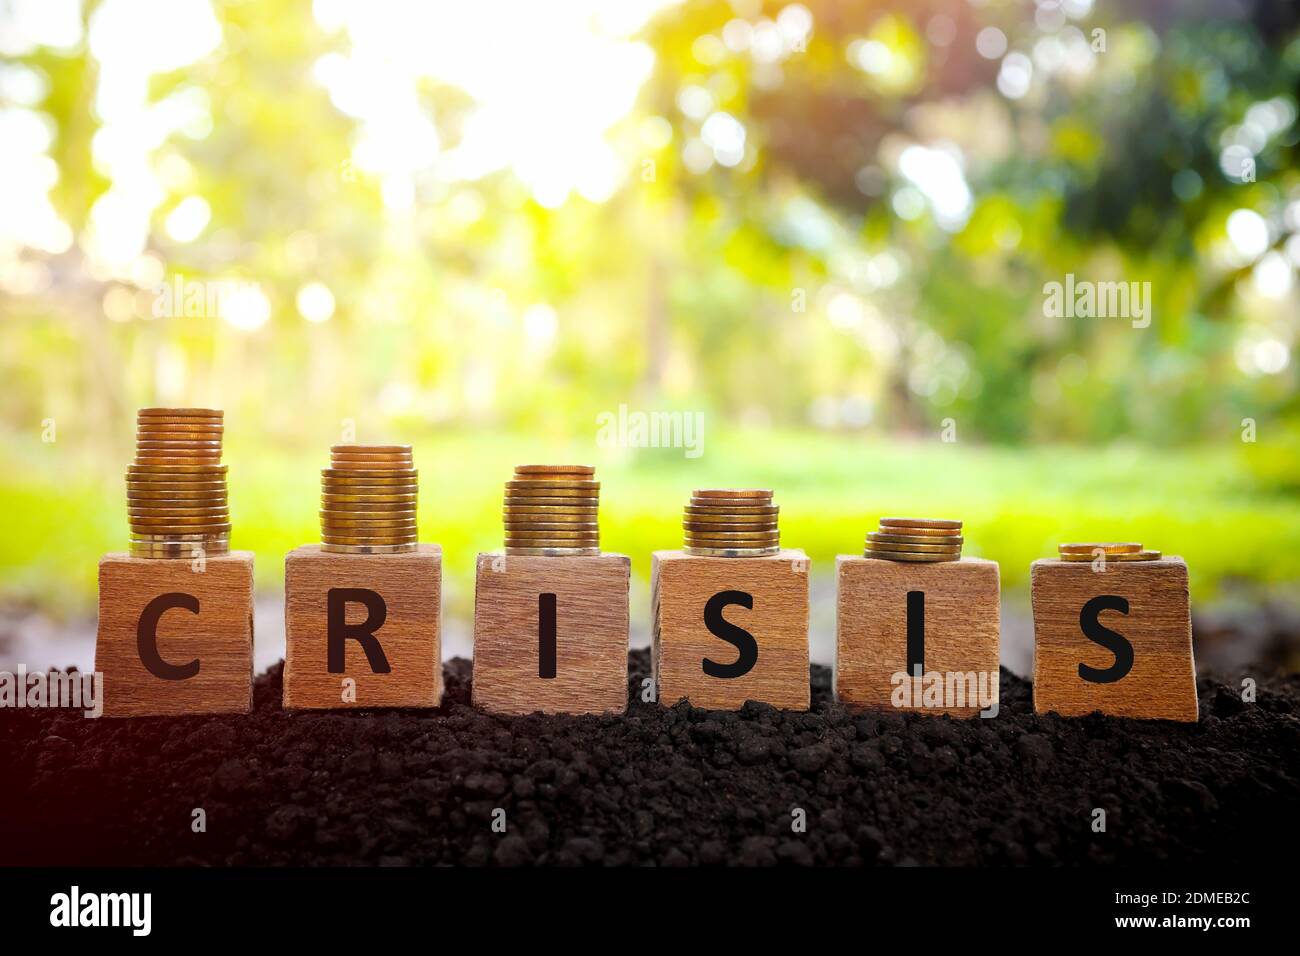 Wirtschafts- und Finanzkrise Rezession und Depression Konzept. Abnehmender Münzstapel auf Holzblöcken bei Sonnenuntergang. Stockfoto